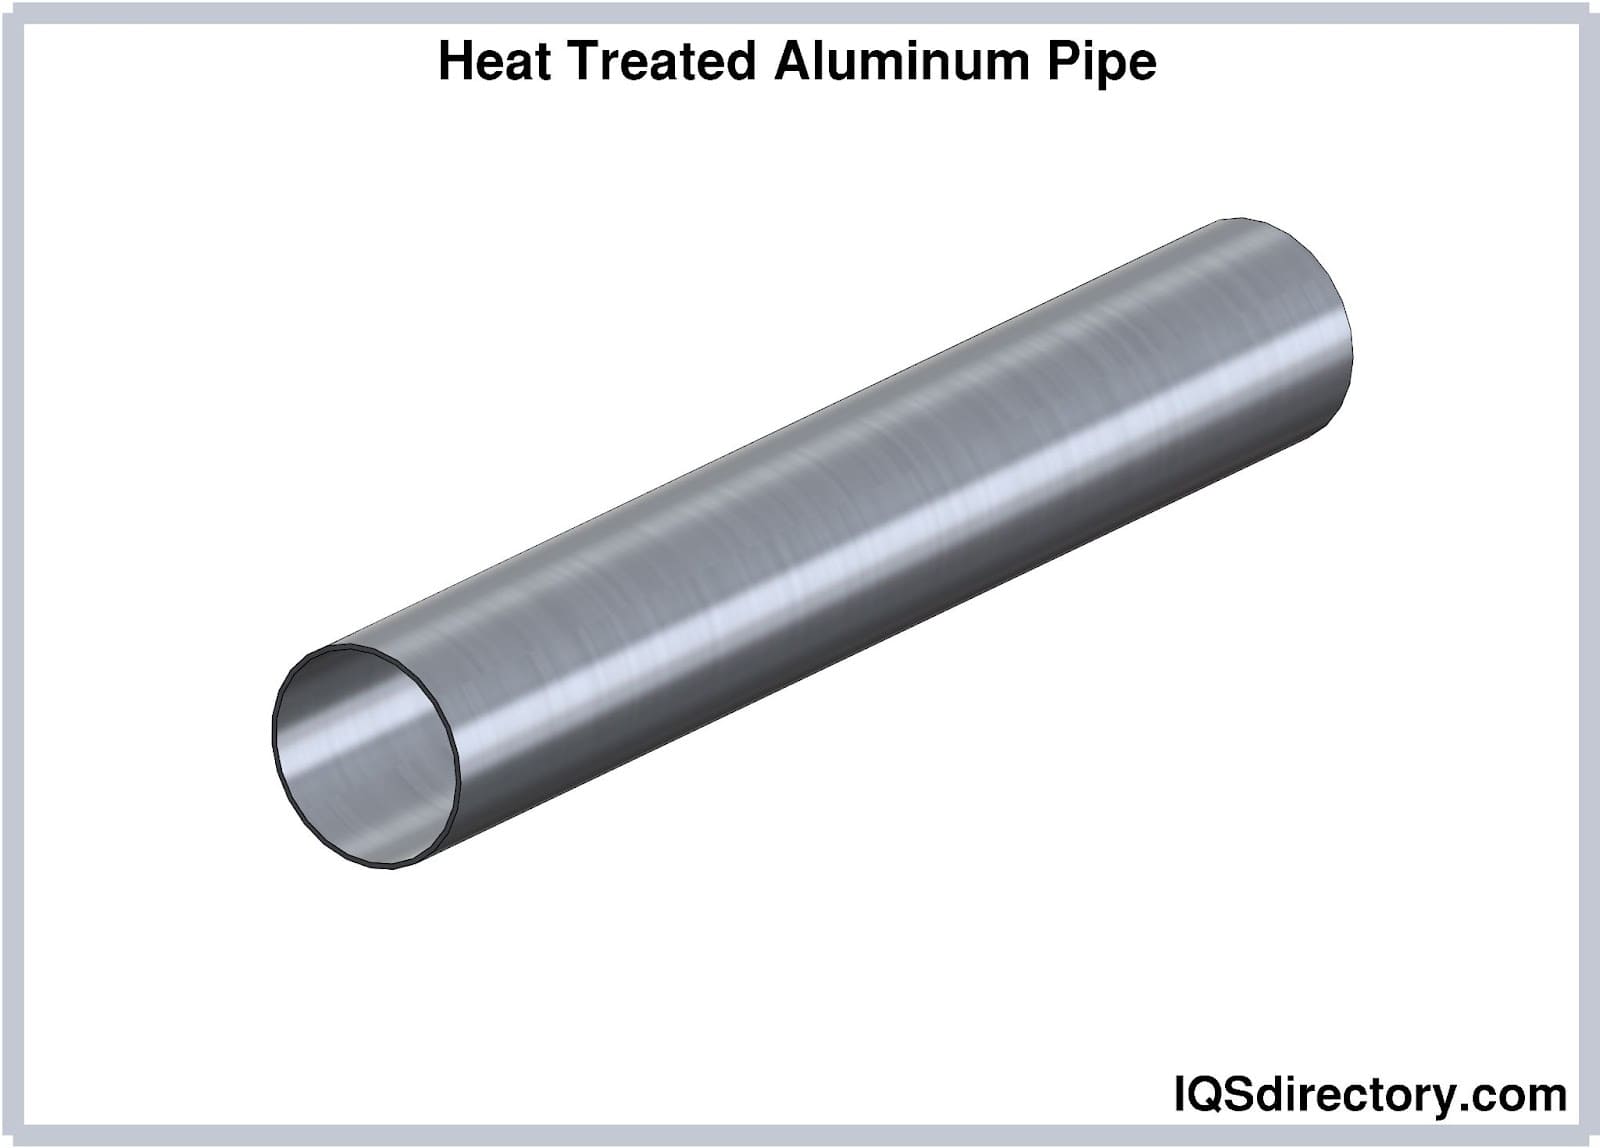 Heat Treated Aluminum Pipe